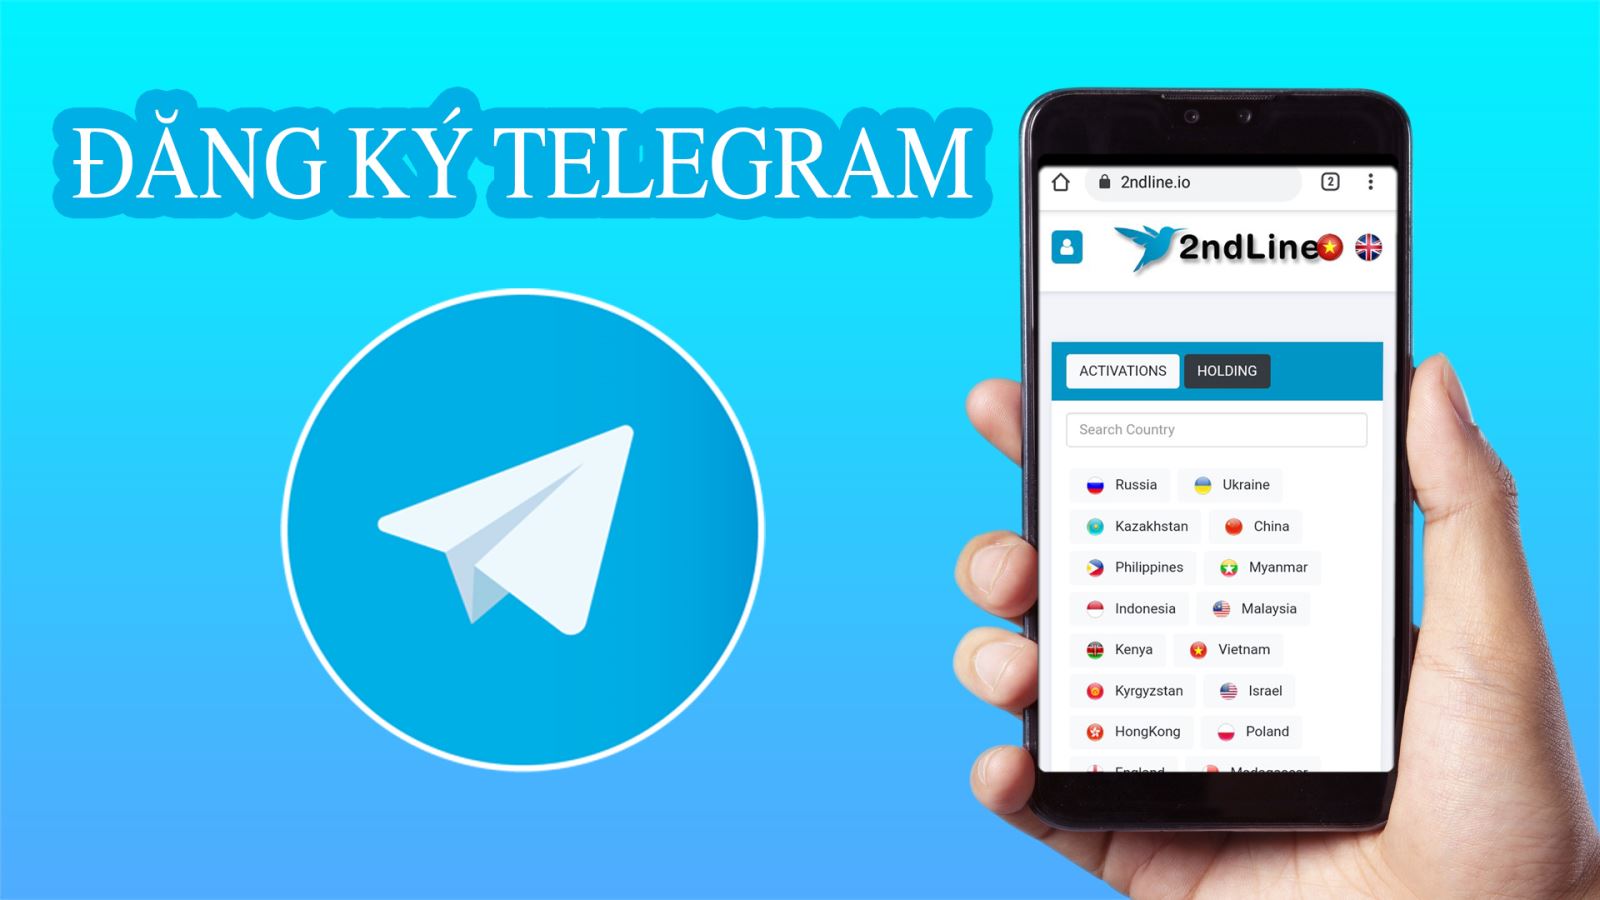 Hướng dẫn đăng ký telegram tại 2ndLine.io